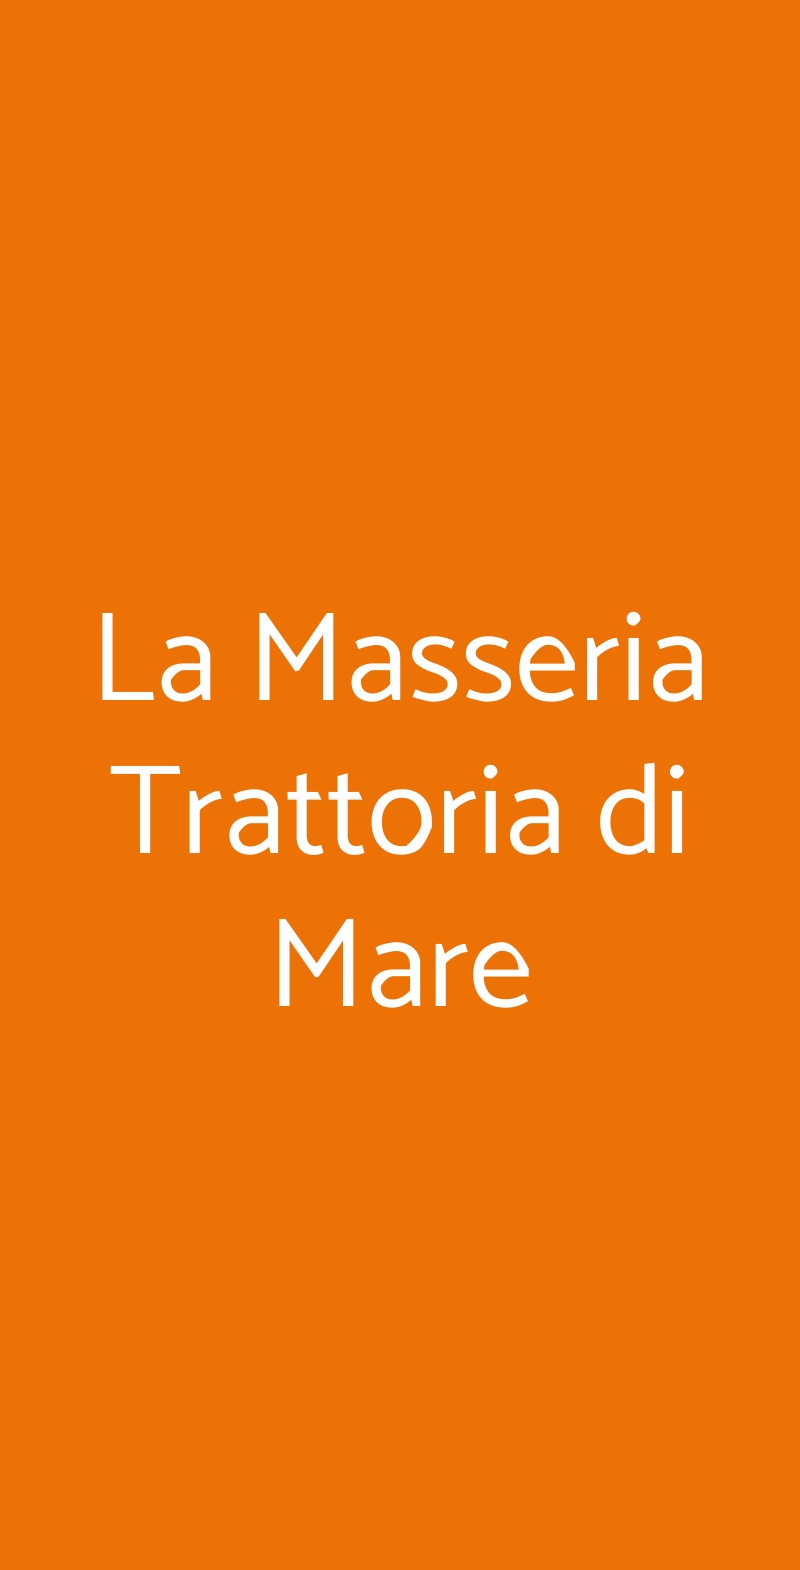 La Masseria Trattoria di Mare Masera di Padova menù 1 pagina